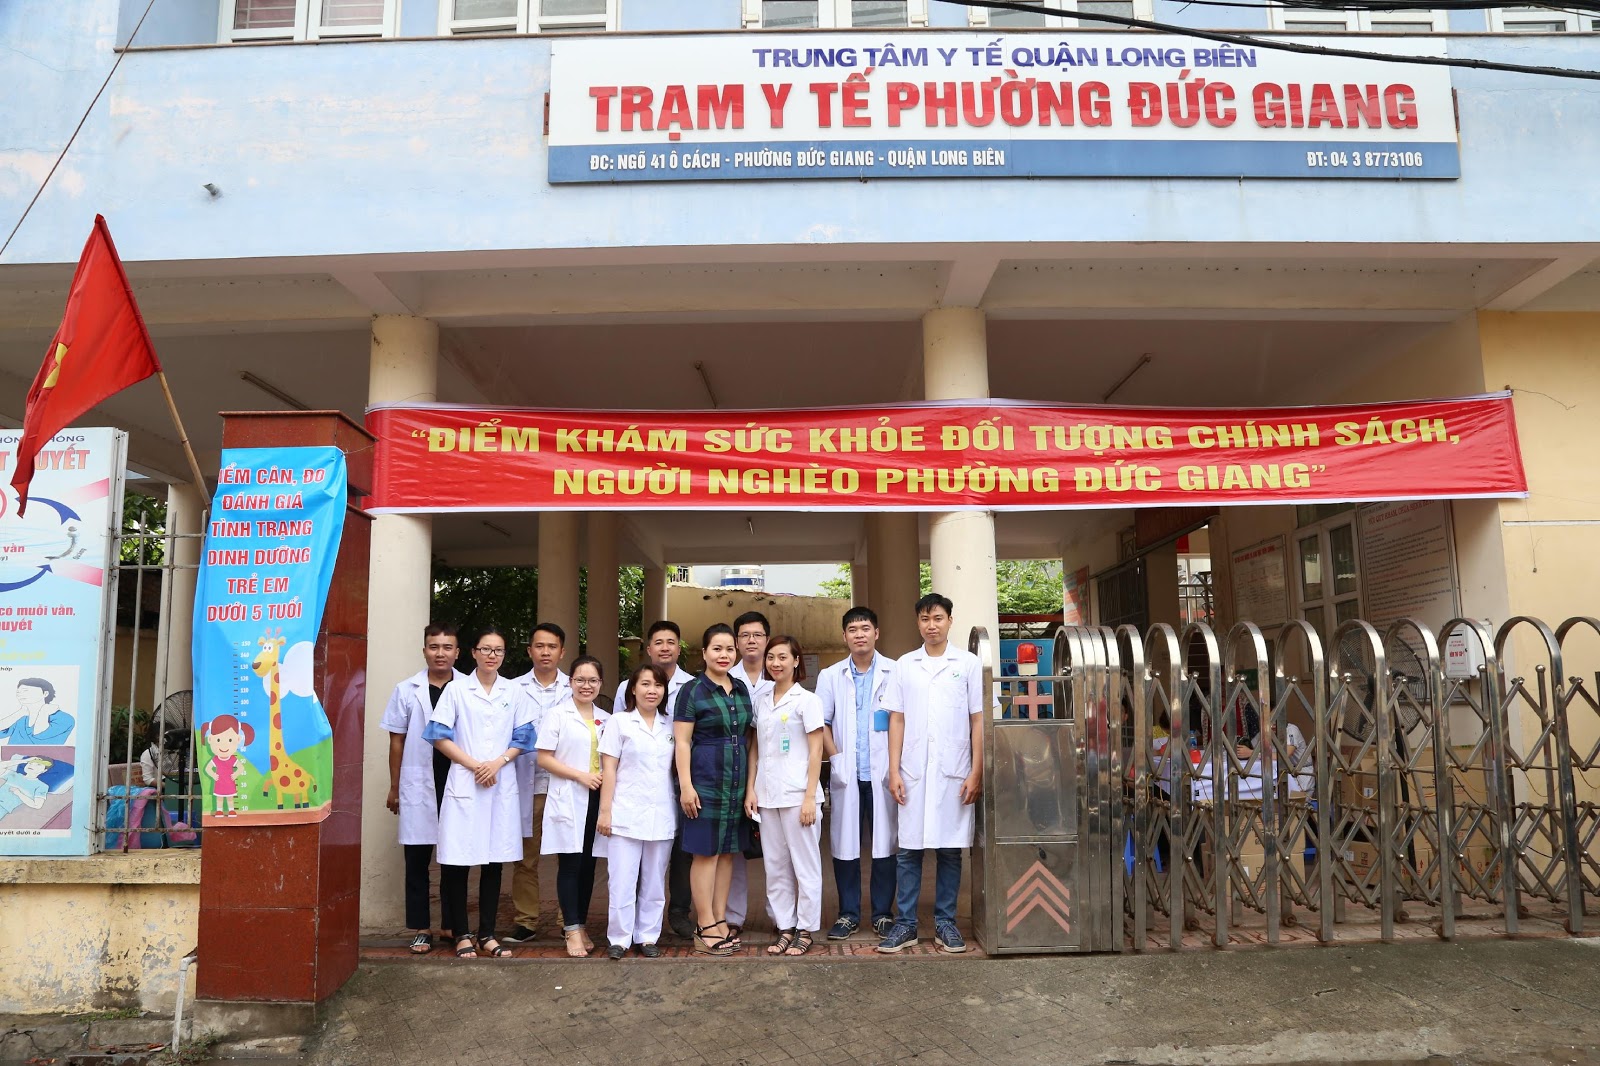 Khám sức khỏe cho đối tượng chính sách tại phường Đức Giang